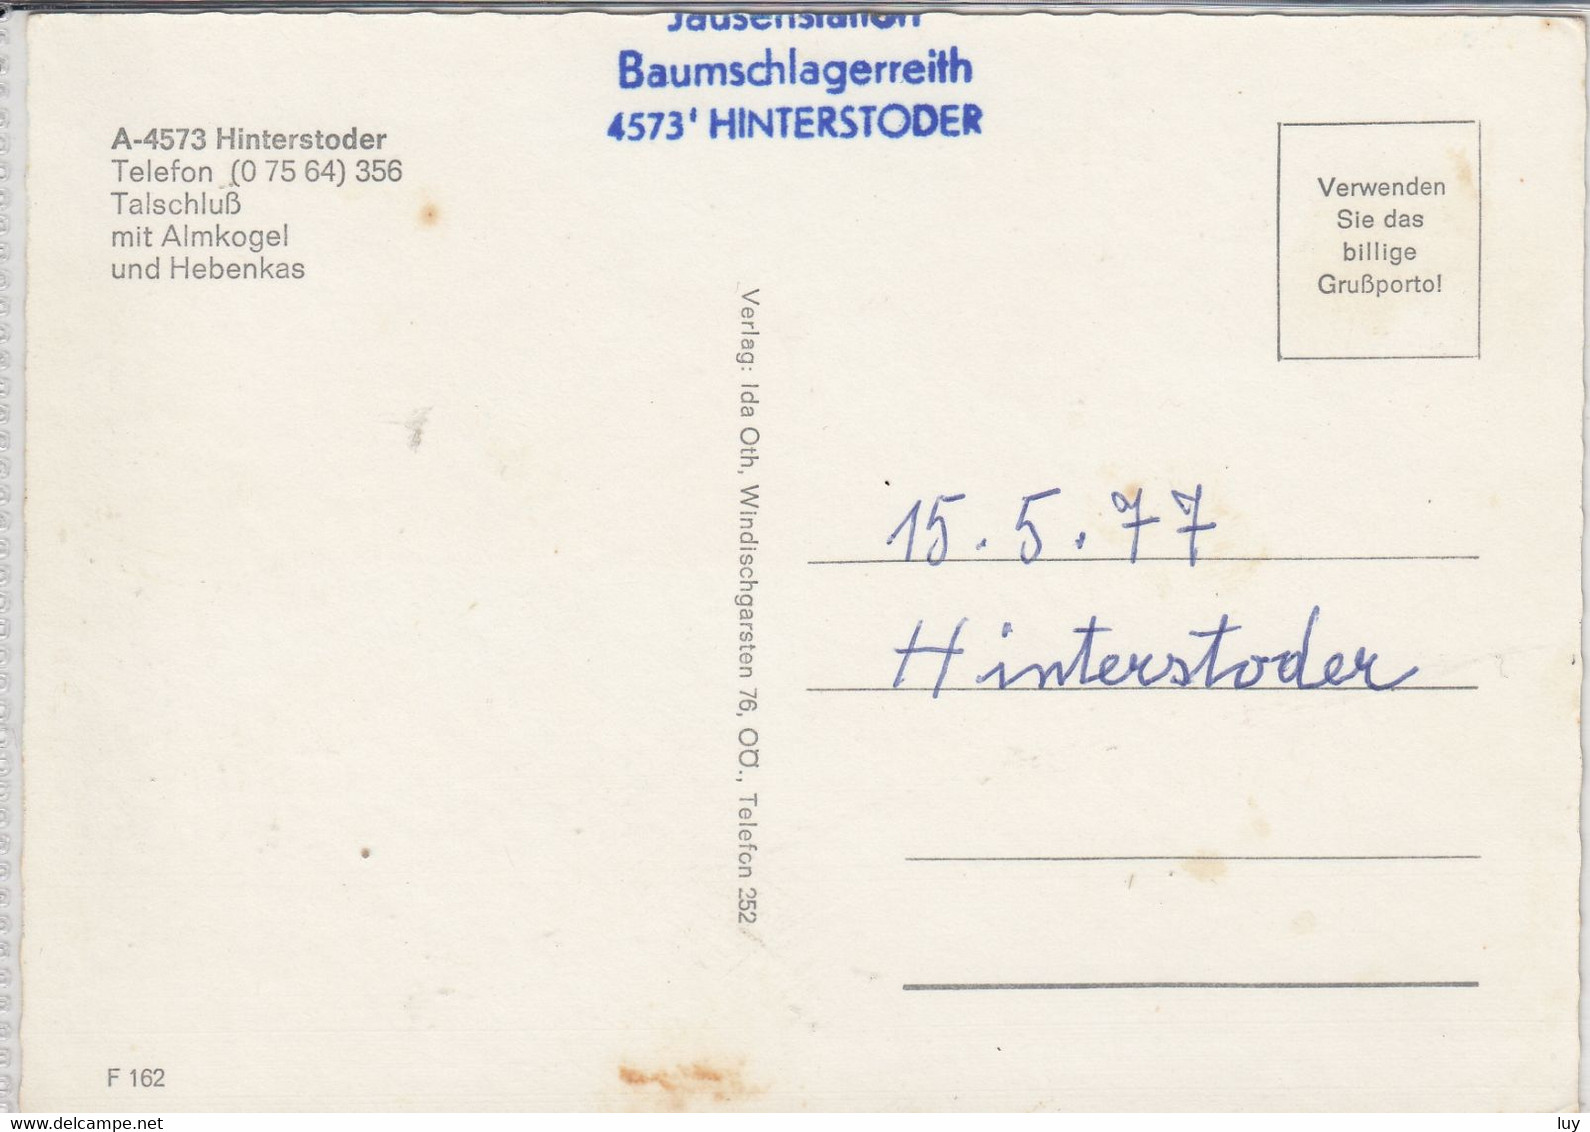 HINTERSTODER; Jausenstation BAUMSCHLAGERREITH,  Talschluß Mit Almkogel Und Hebenkas - Hinterstoder